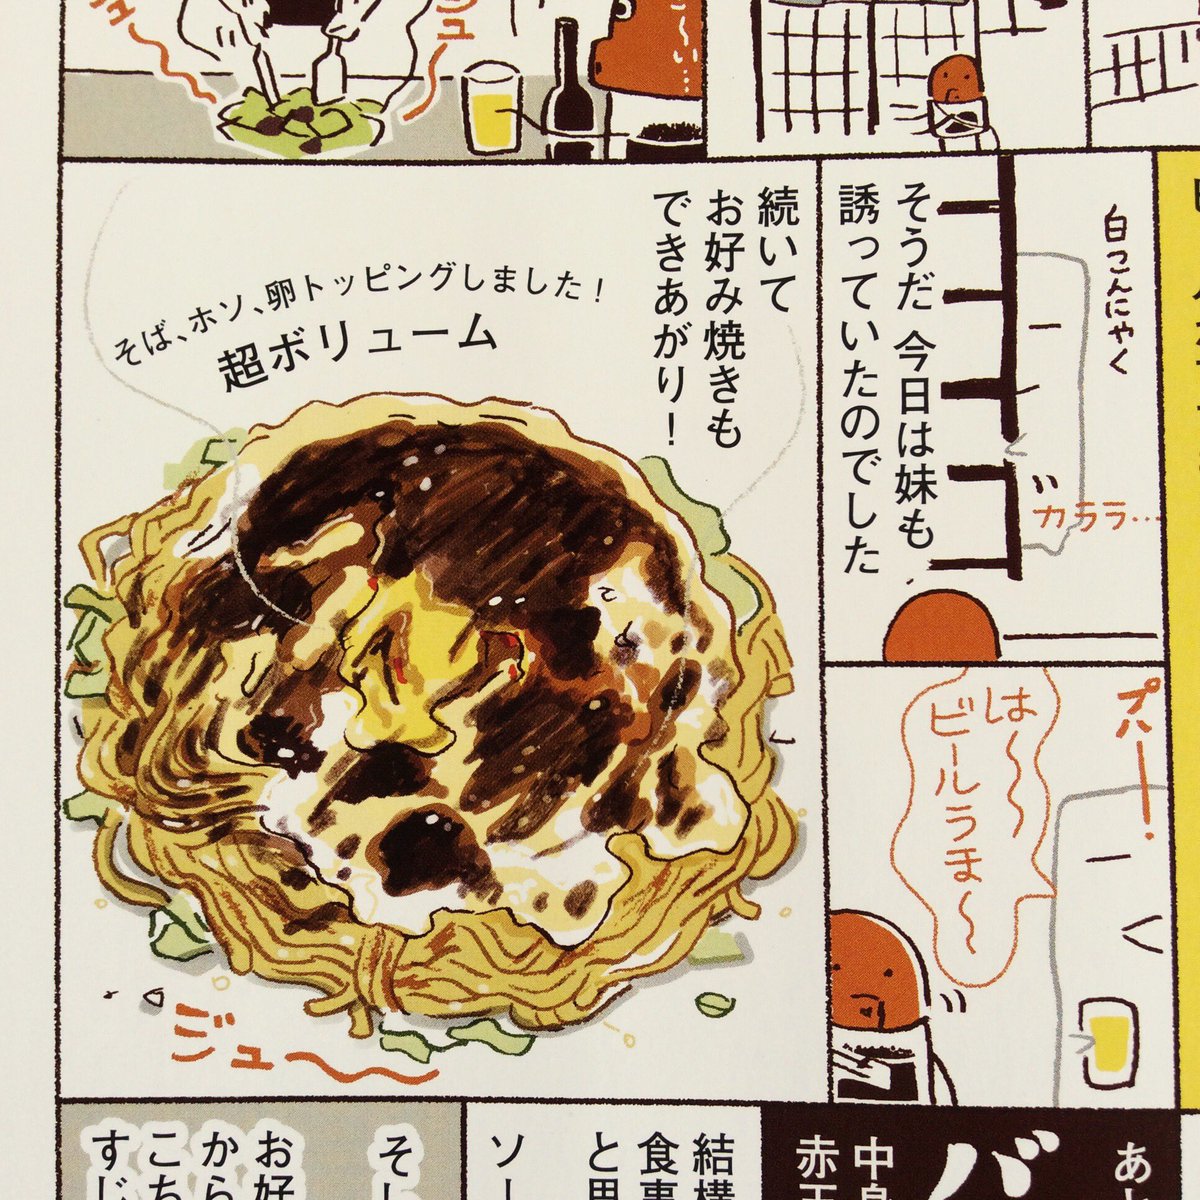 『Men's Leaf』4号に2Pマンガ書きました。京都崇仁団地にあるお店のお話。ホルモンとソースがおいしいです。 